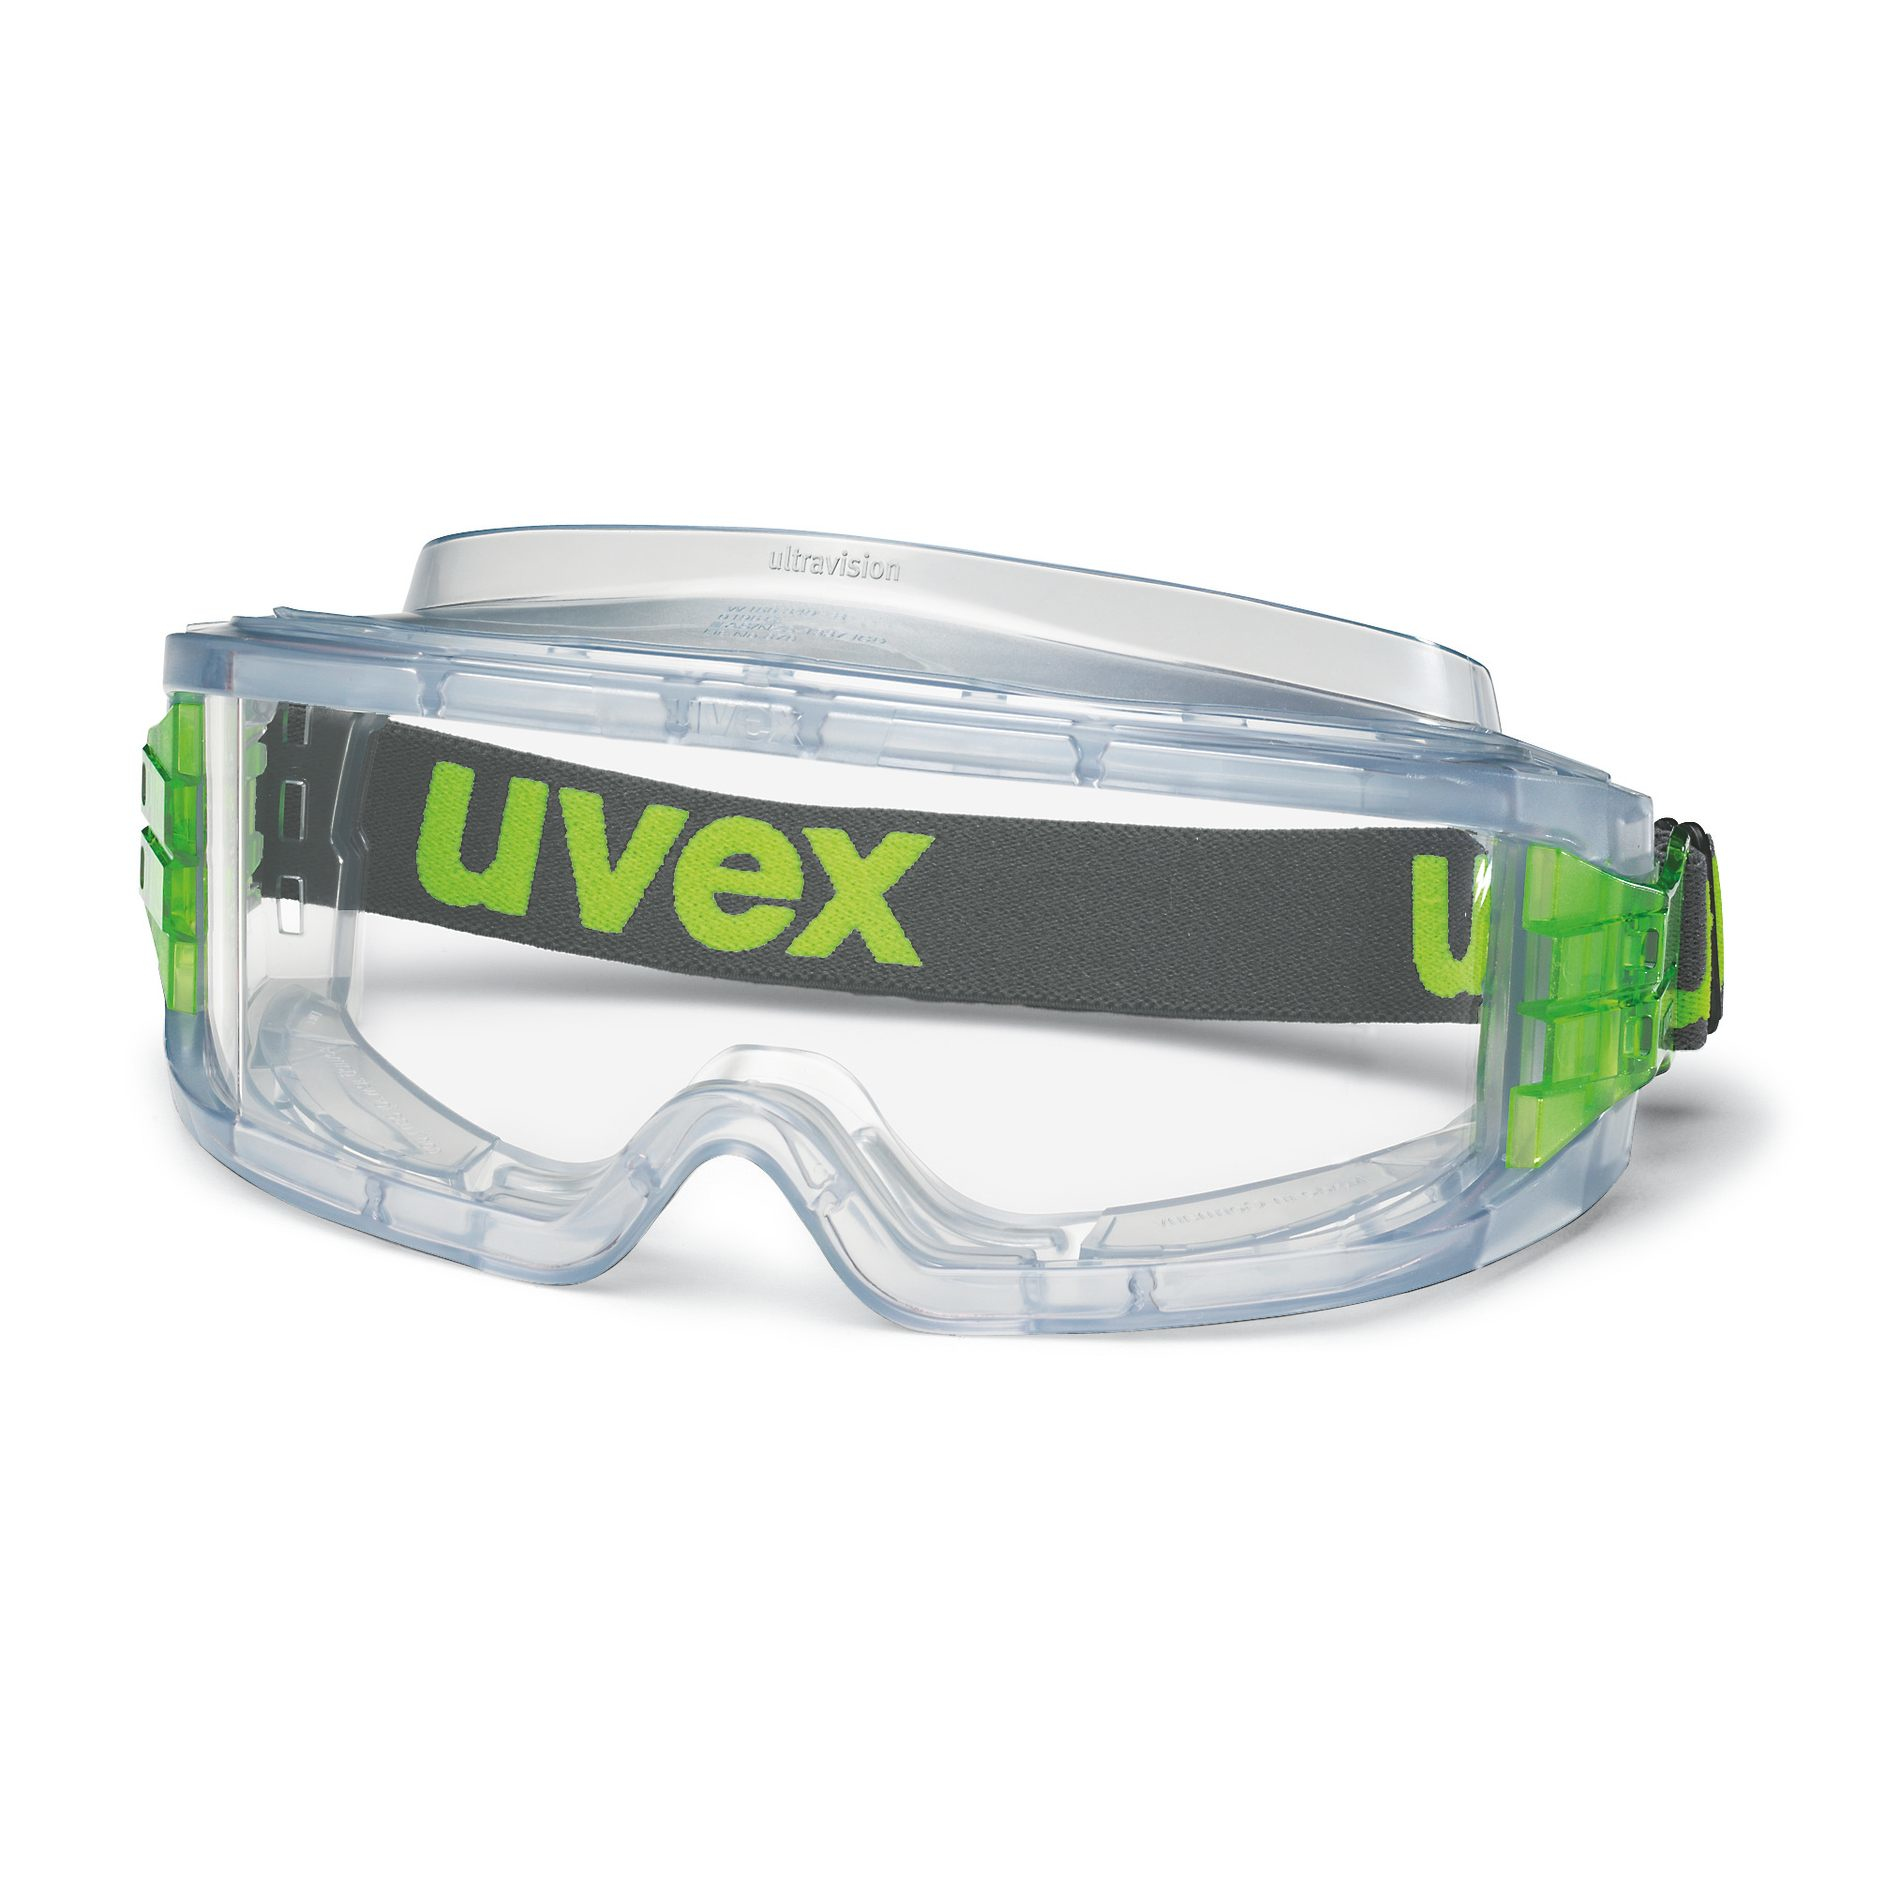 UVEX Arbeitsschutz Vollsichtbrille ultravision grau